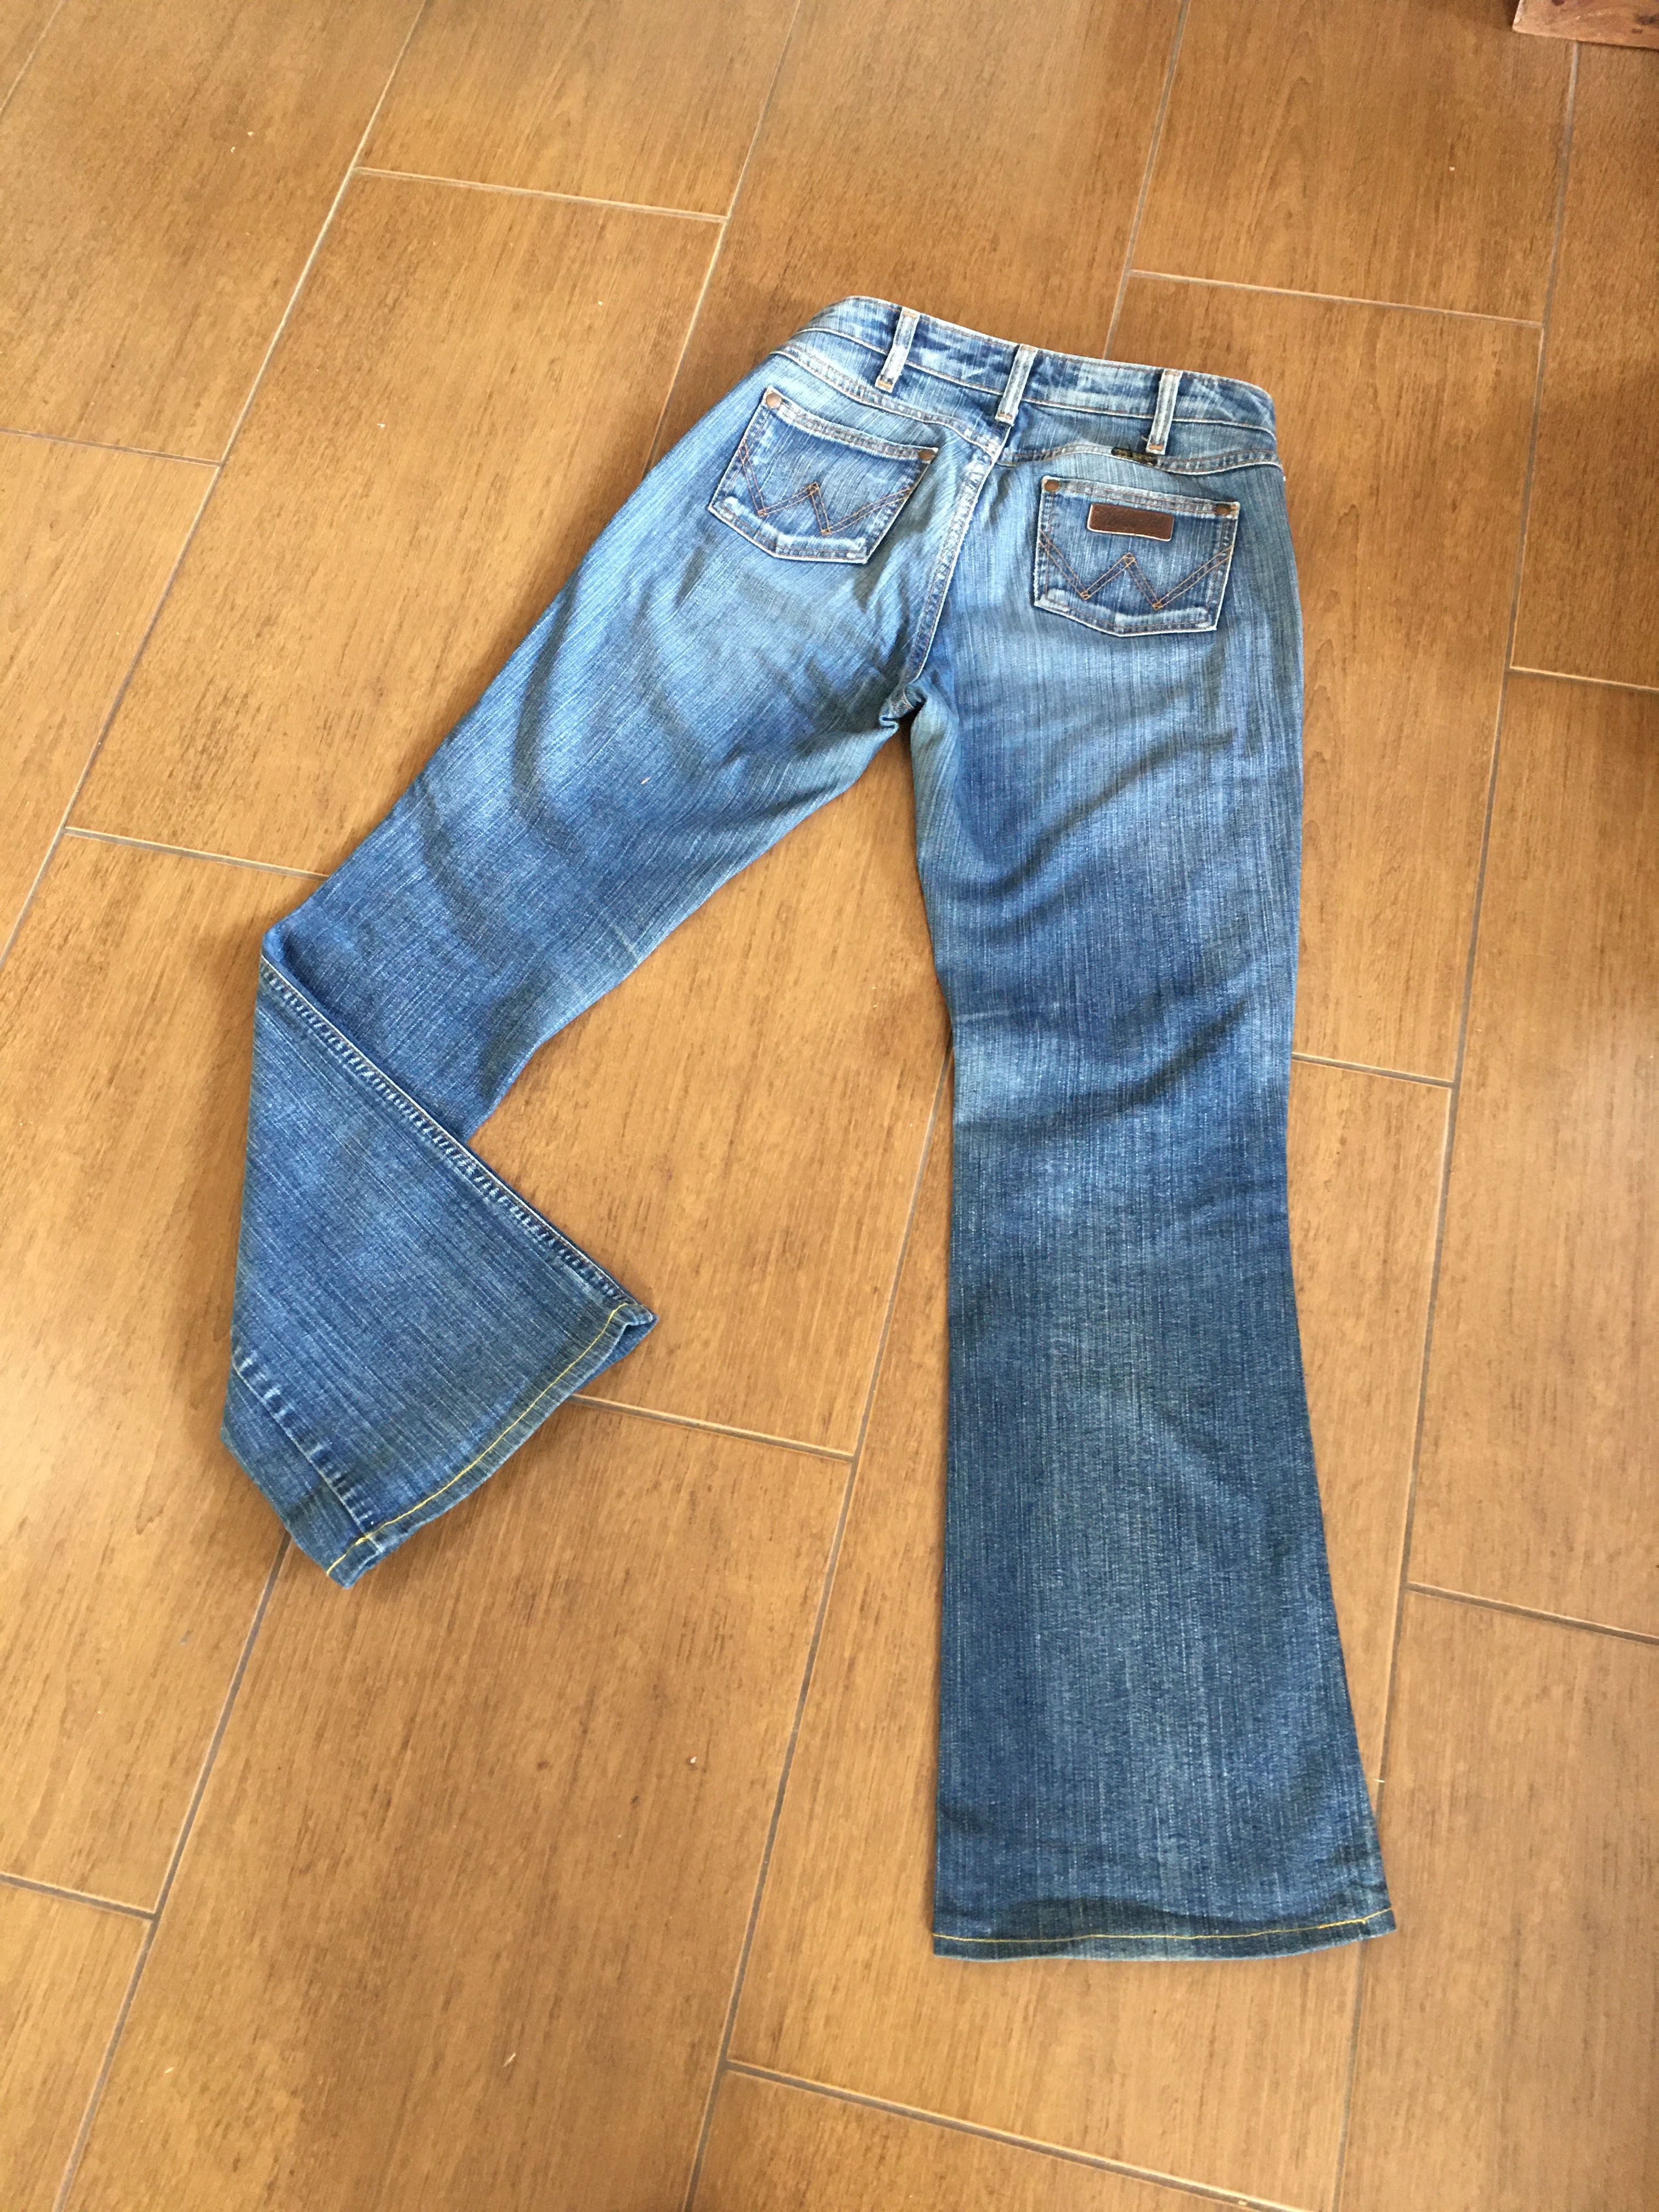 Spodnie jeansy, Wrangler, rozmiar W30, L 34, granatowe